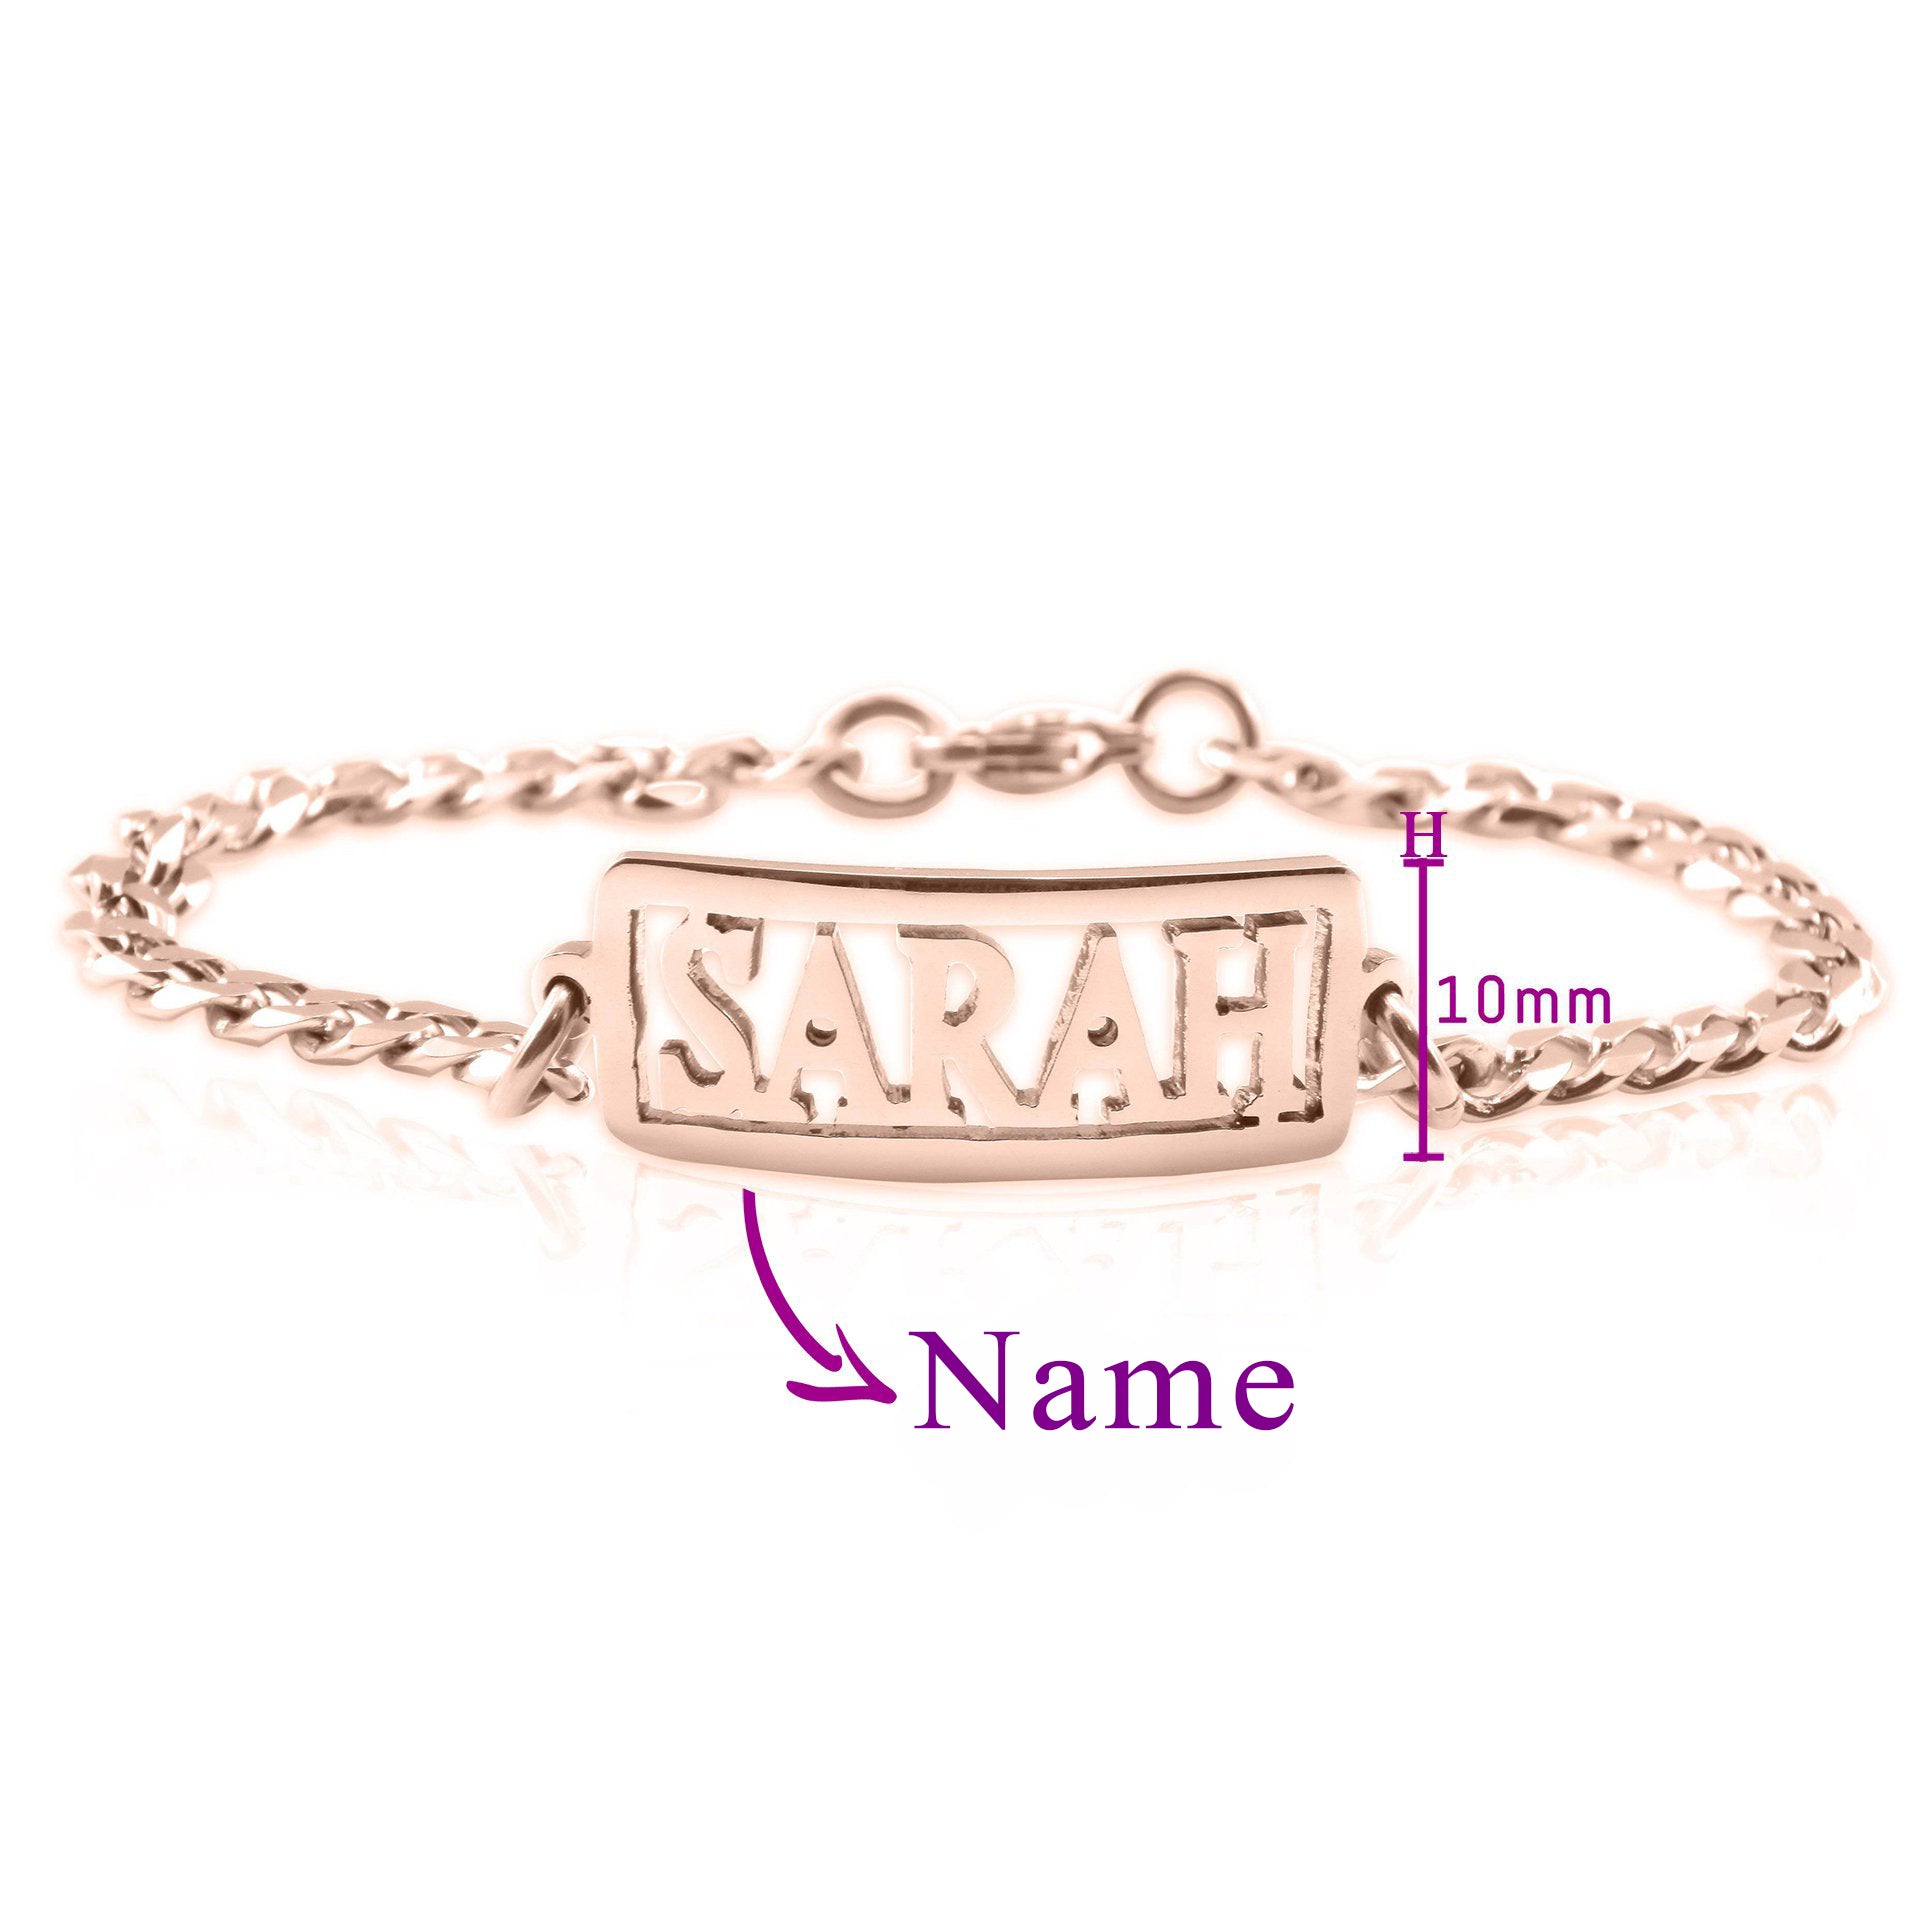 Name Bracelet (Birthstones Optional) - Bangles & Bracelets by Belle Fever